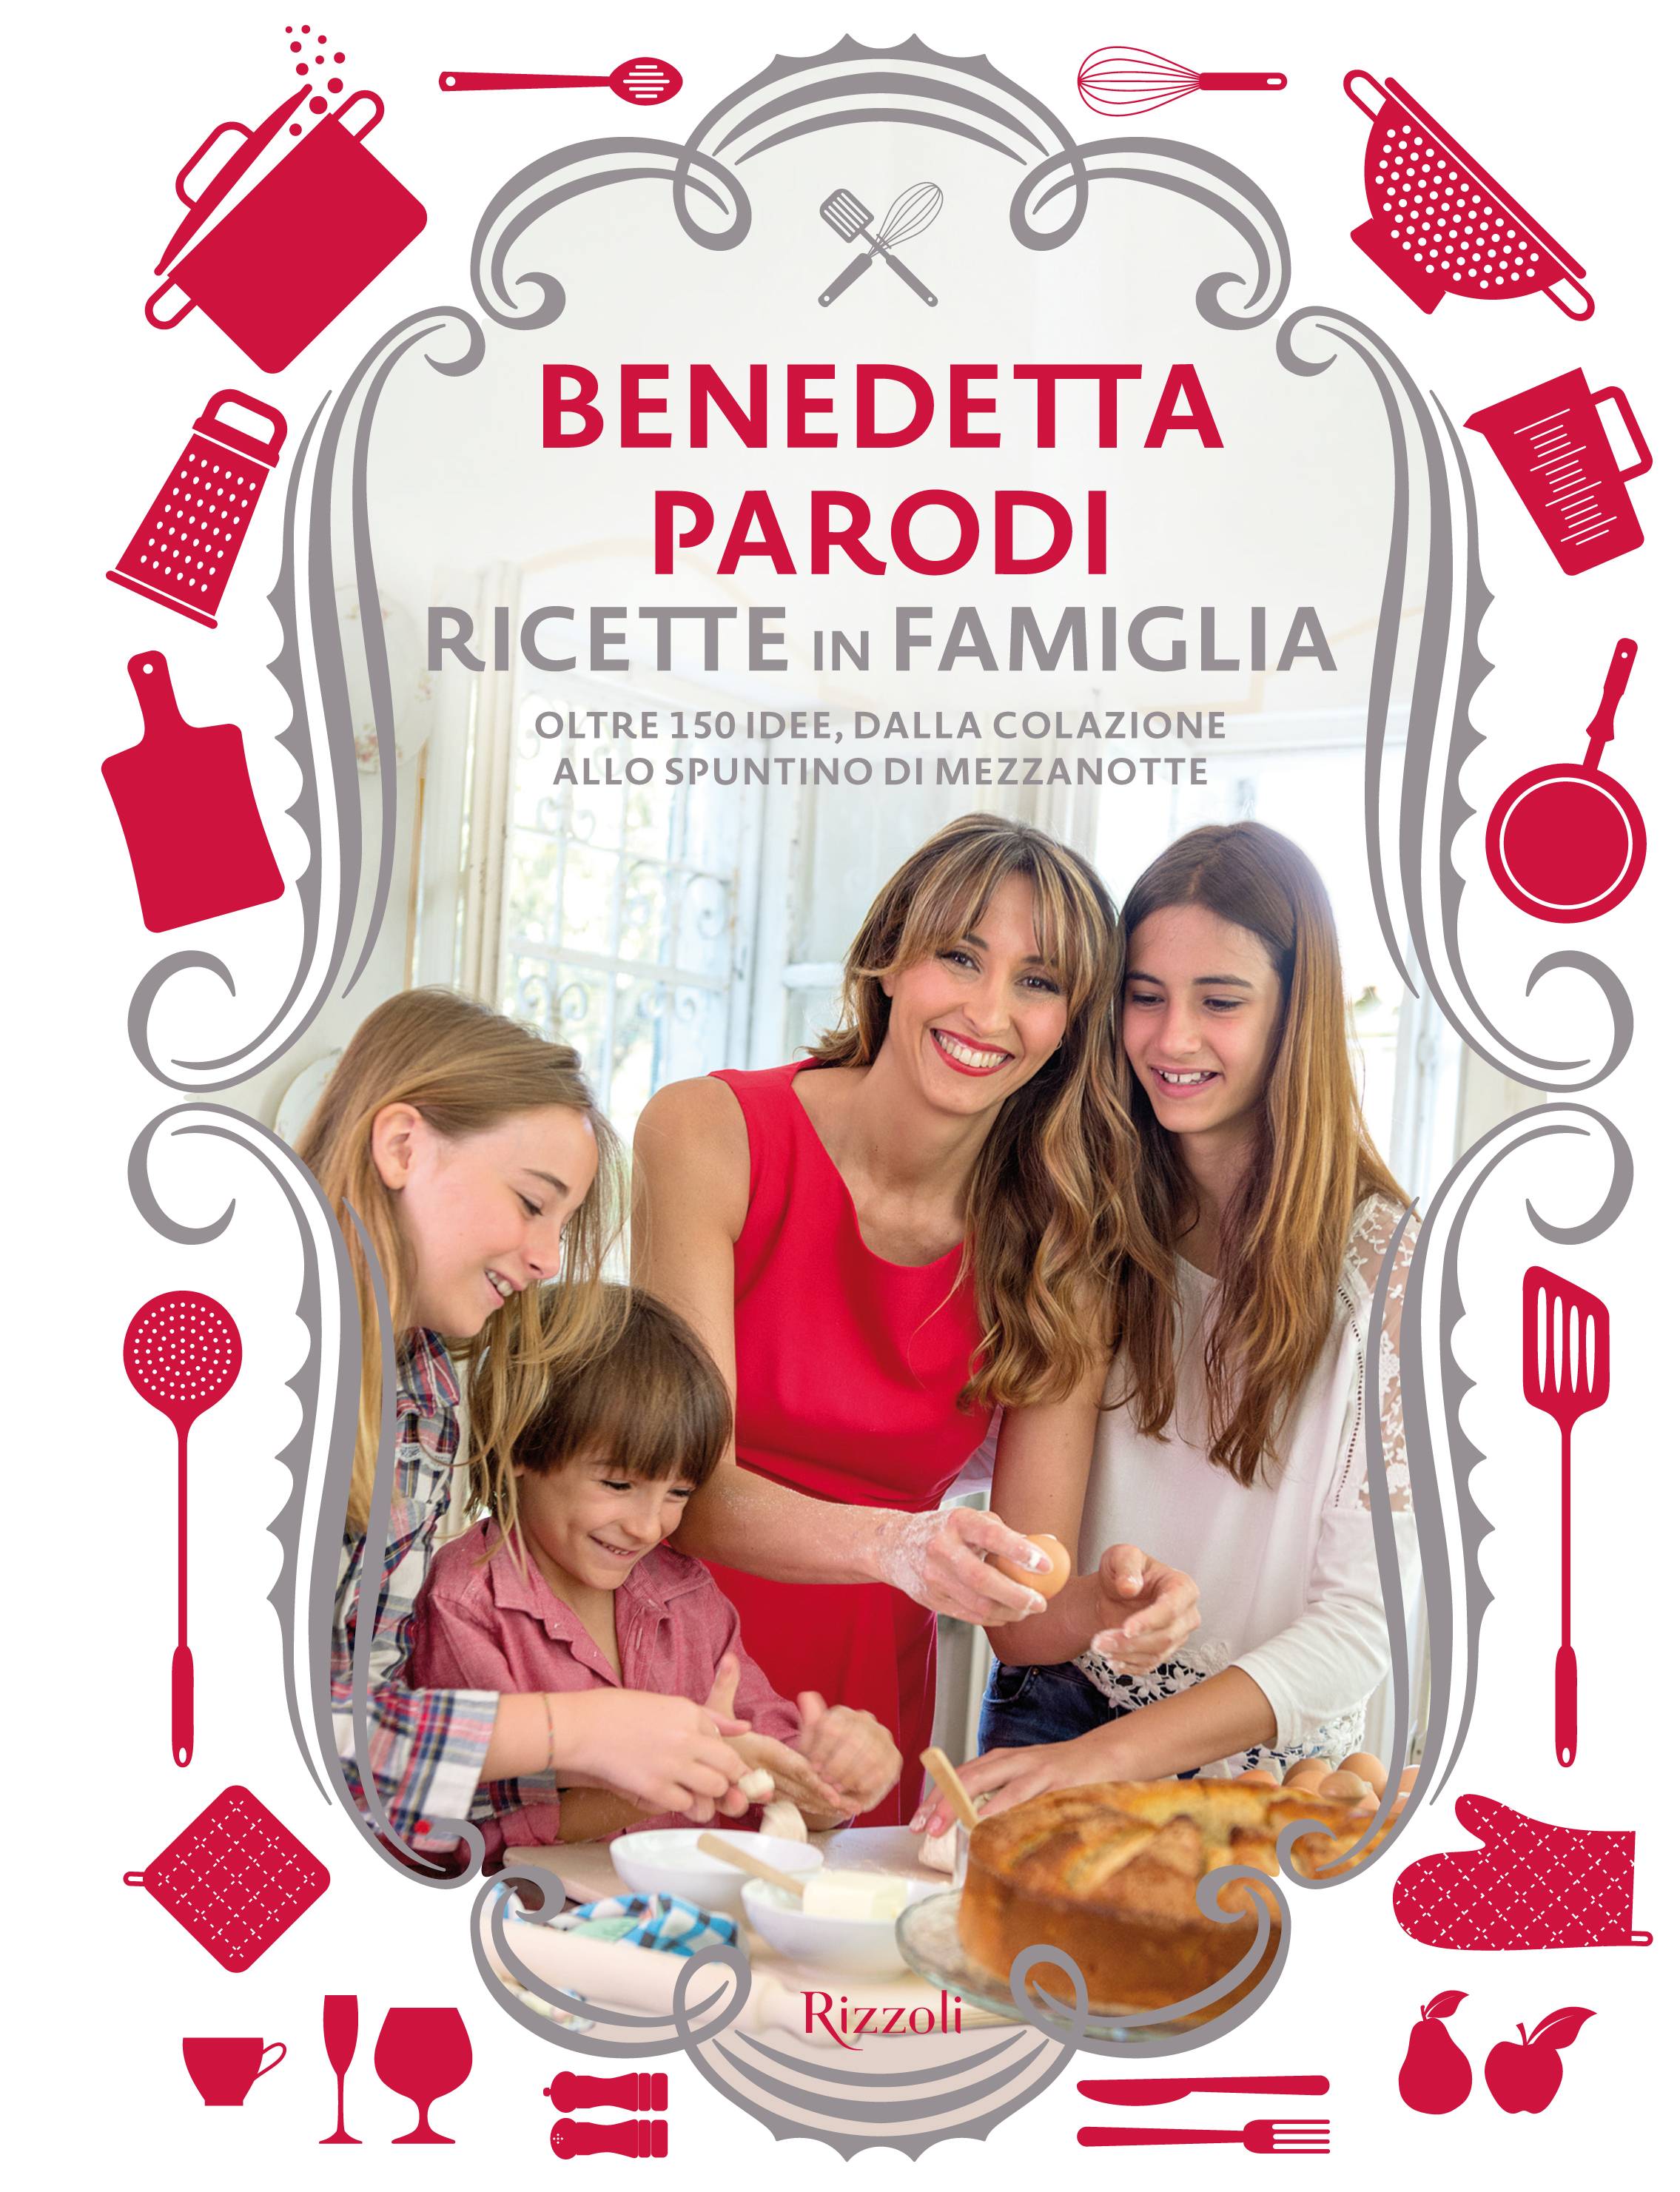 http://www.culturaeculture.it/wp-content/uploads/2015/09/ricette-in-famiglia-benedetta-parodi-nuoov-libro.jpg